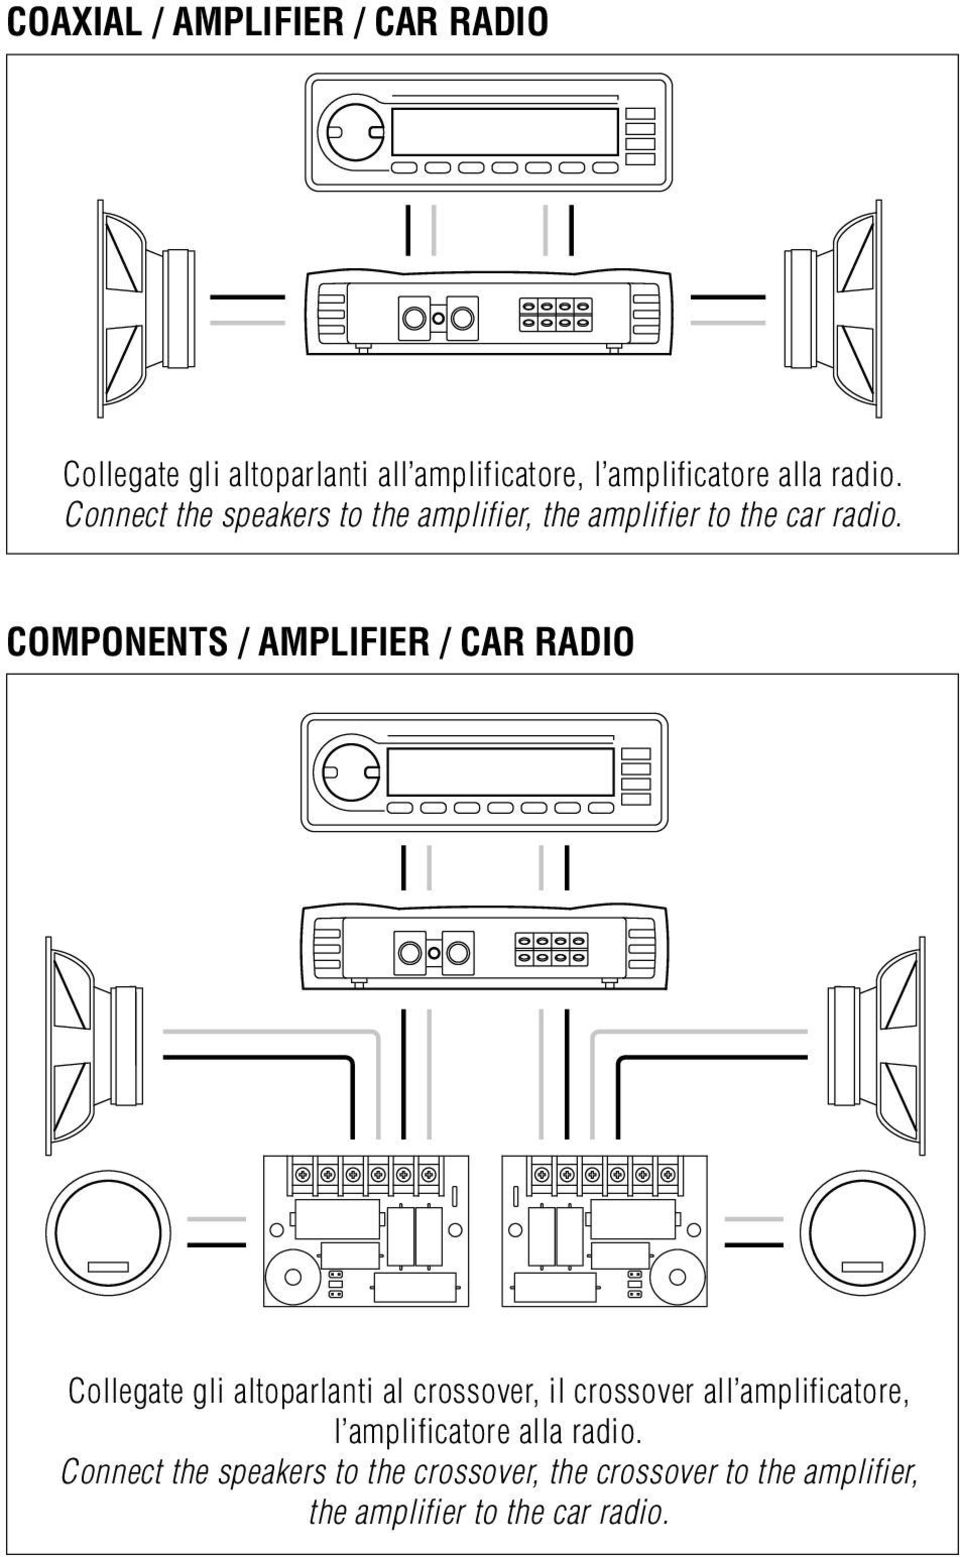 COMPONENTS / AMPLIFIER / CAR RADIO Collegate gli altoparlanti al crossover, il crossover all